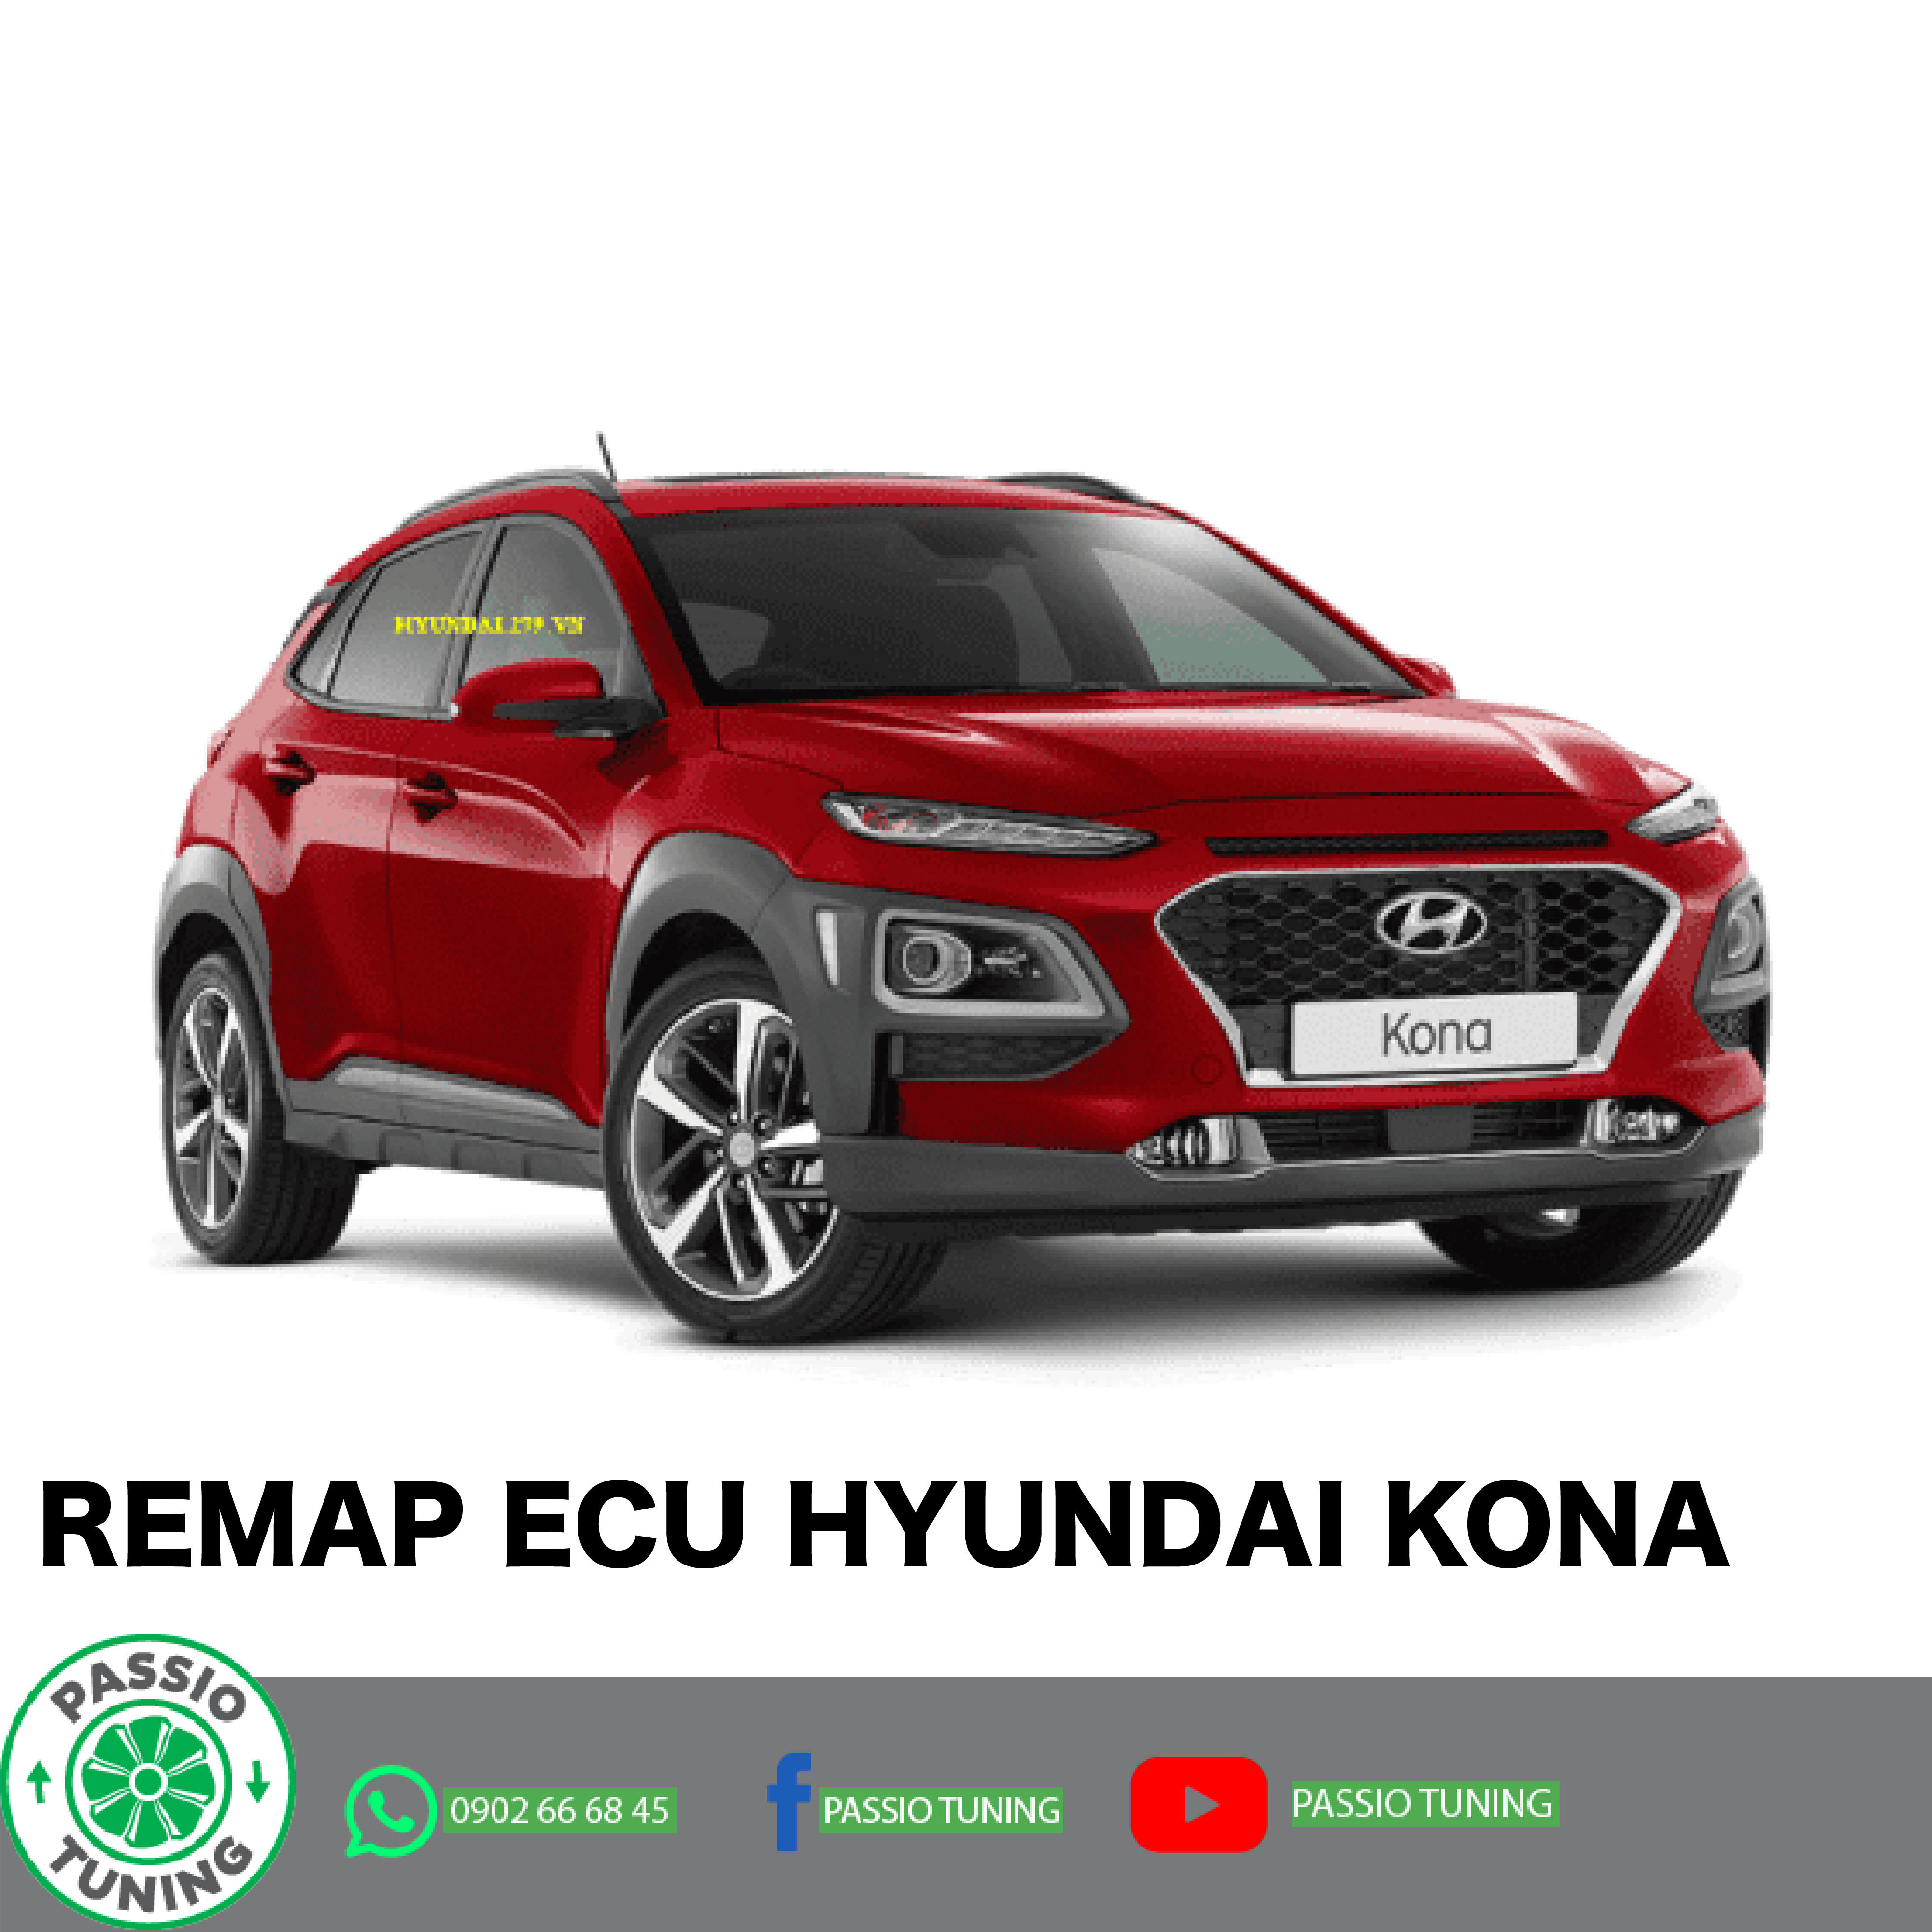 Xe Đẹp Auto bán xe Hyundai Kona 20 ATH 2018 Đỏ Nội Thất Đen giá 570 triệu